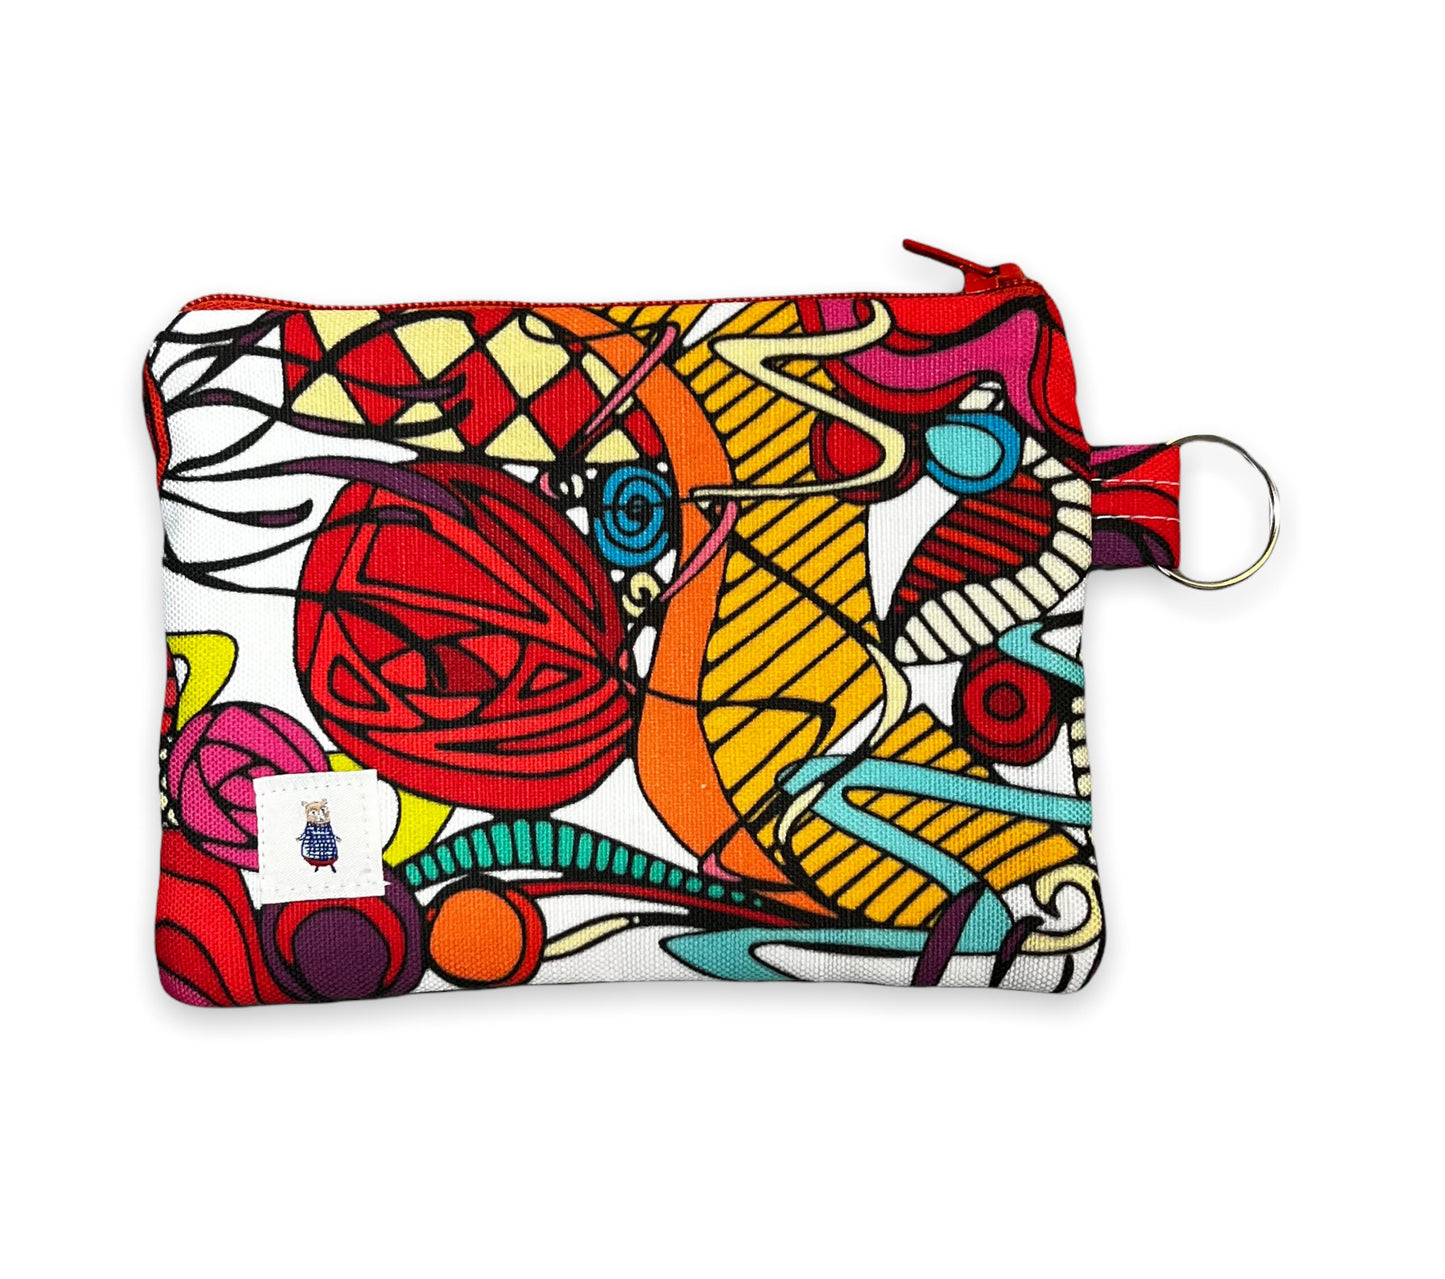 Red coin purse, abstract art money pouch, flashy modern art zipper pouch, gift for art fan